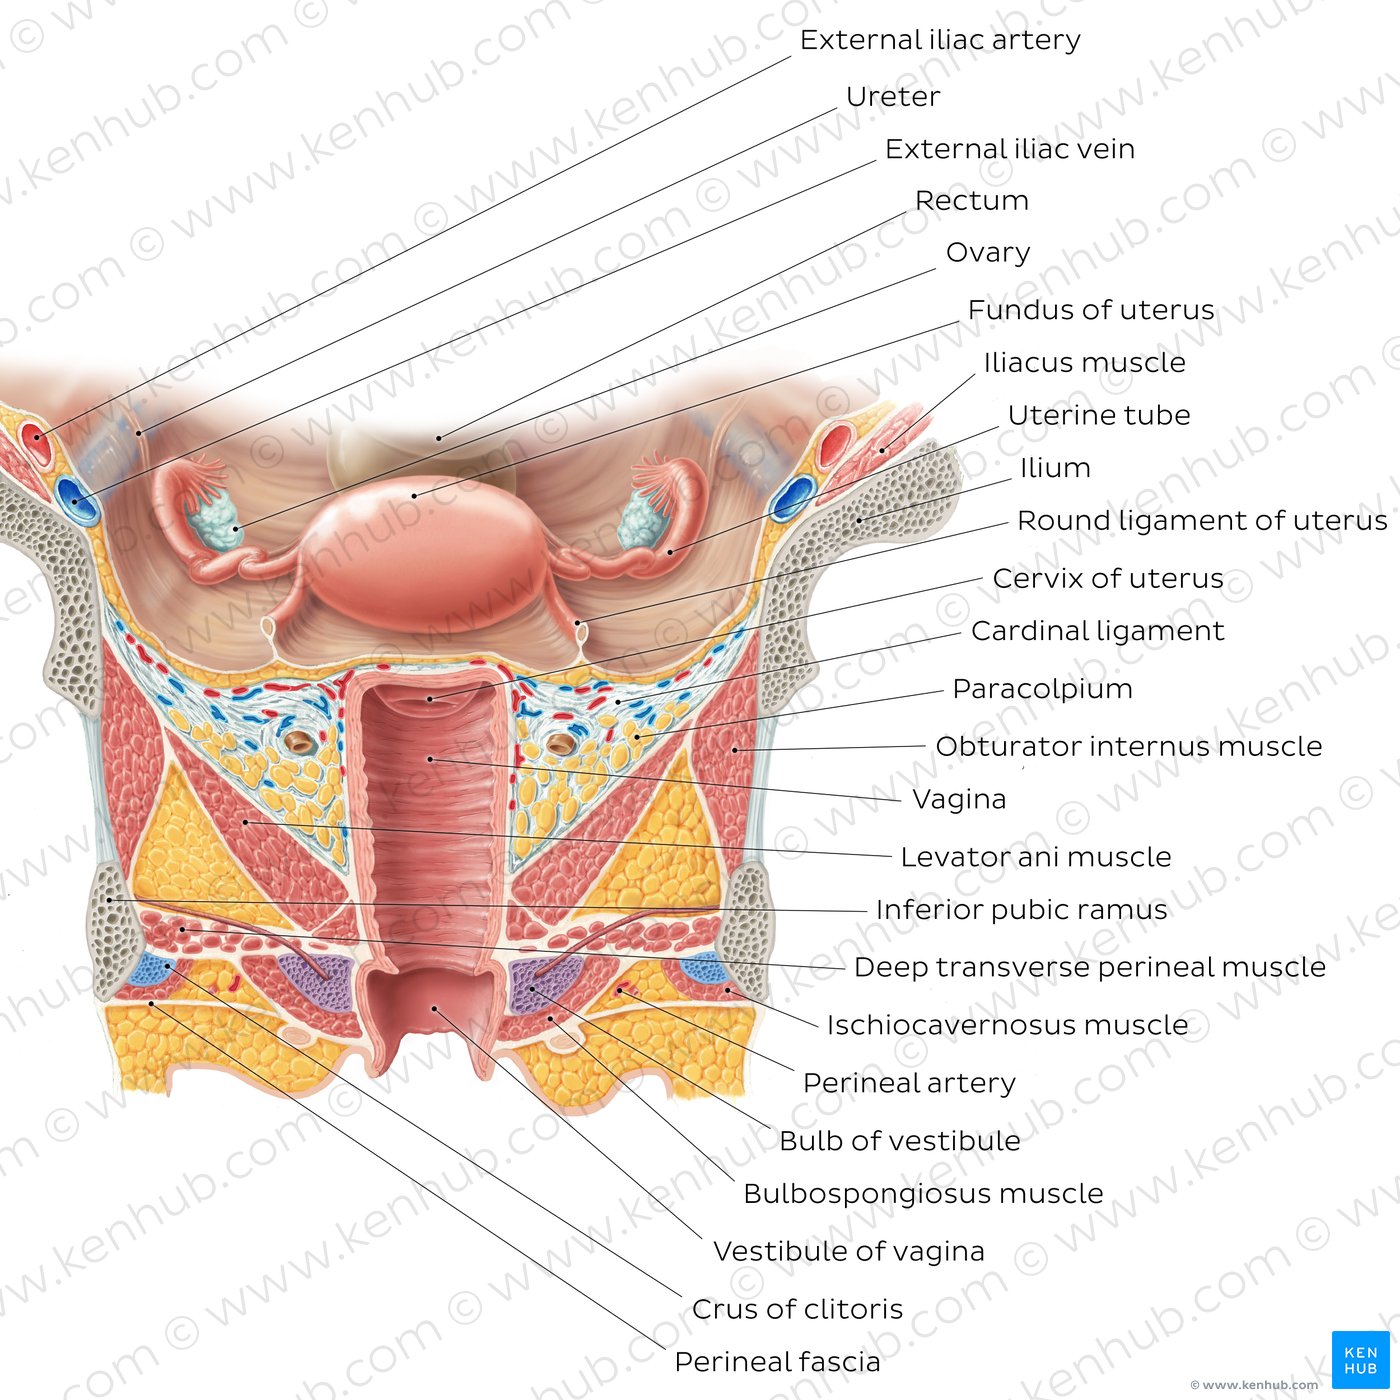 Uterus and vagina